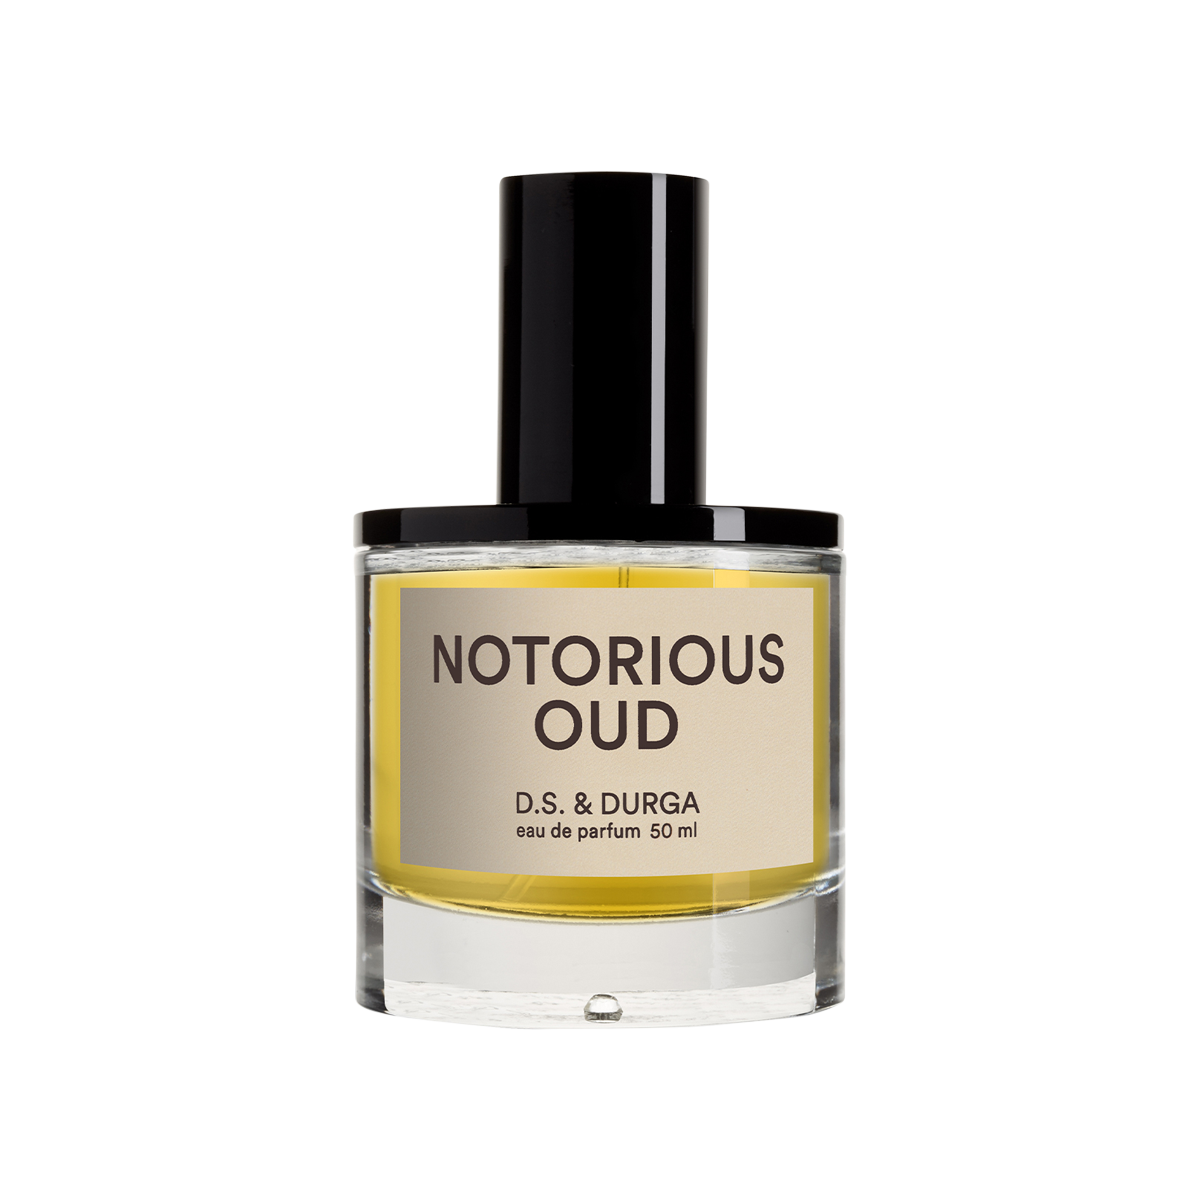 D.S. & DURGA - Notorious Oud Eau de Parfum